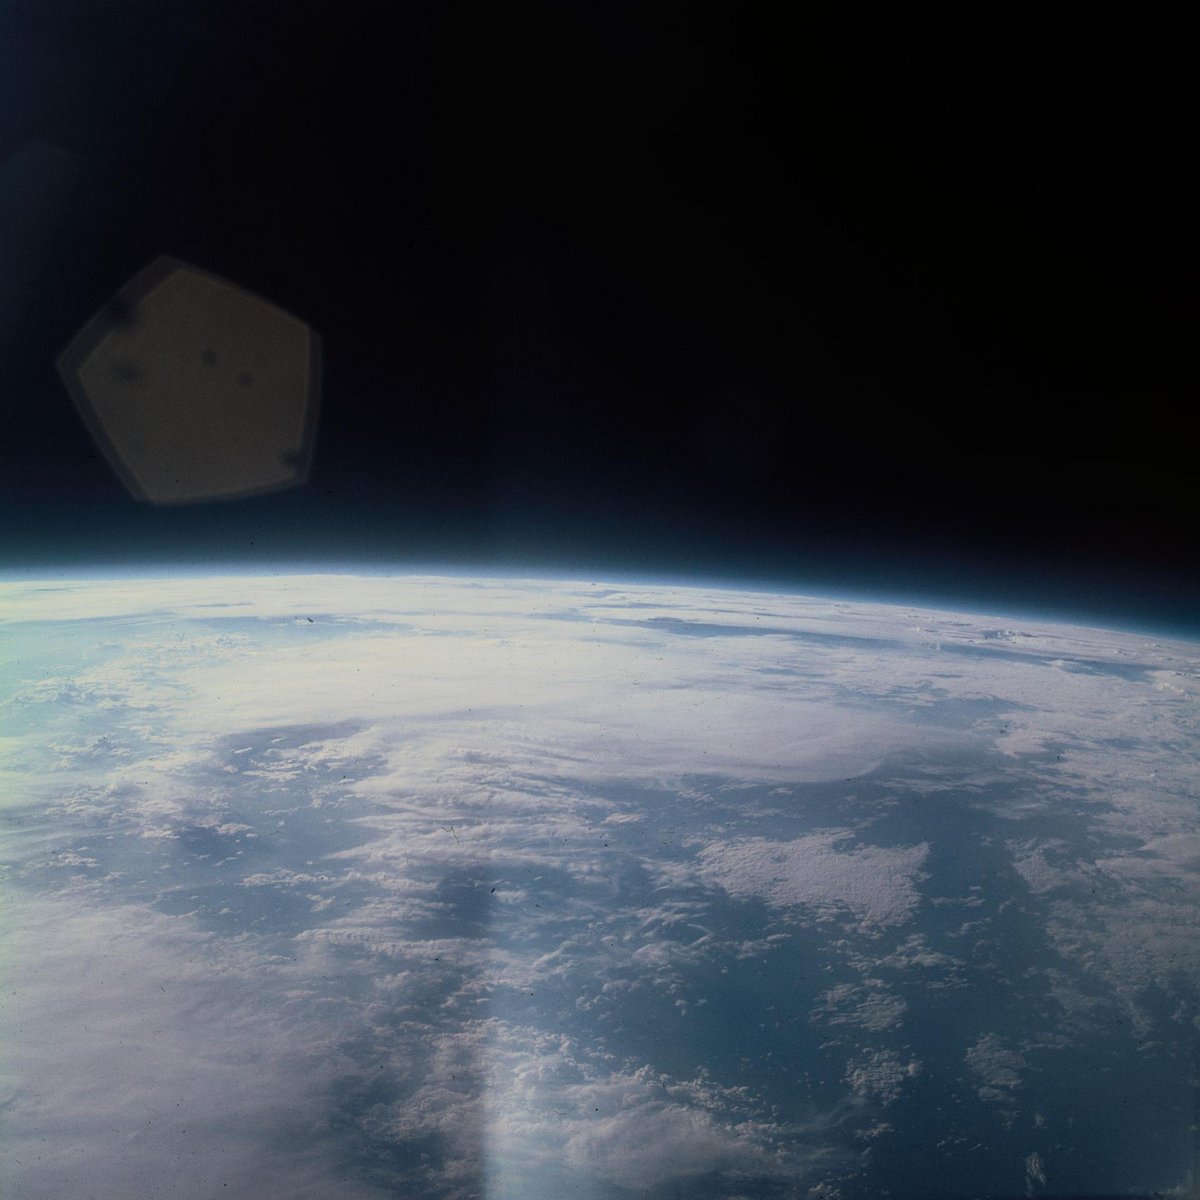 Une photo prise au cours de la mission. Il y avait alors bien peu d'humains qui avaient contemplé cette vue... © NASA